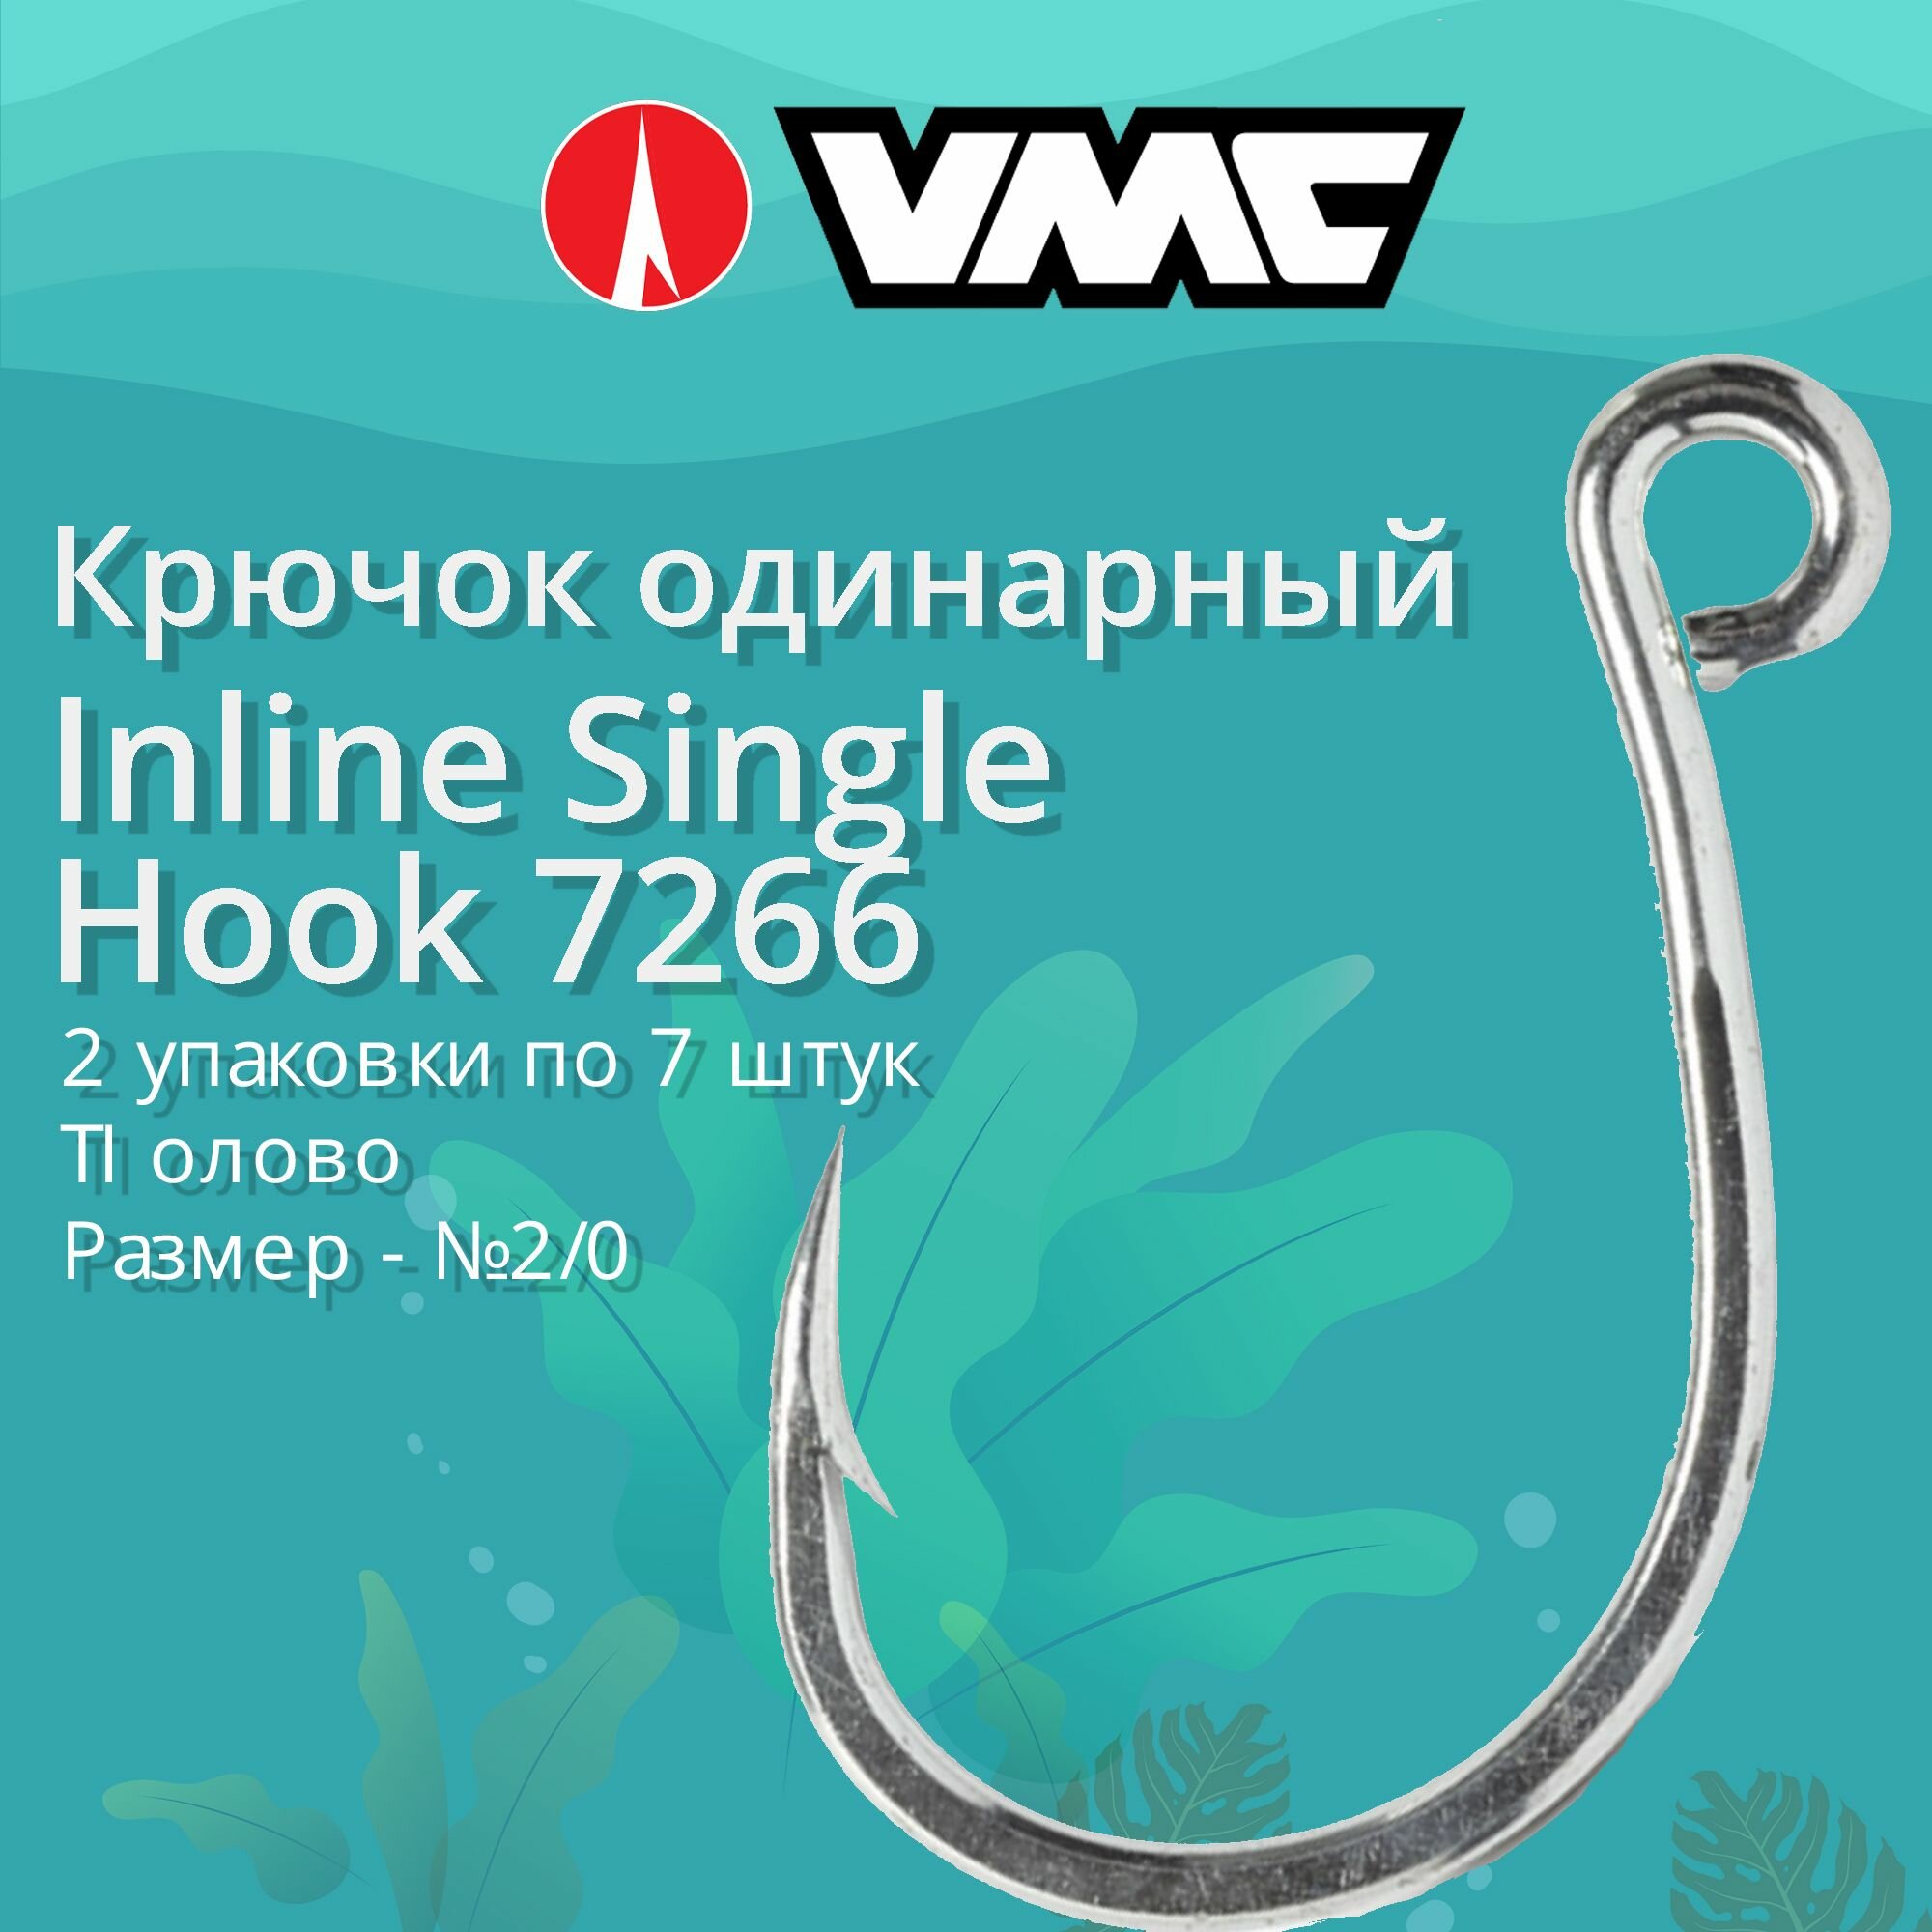 Крючки для рыбалки (одинарный) VMC Inline Single Hook 7266 TI (олово) №2/0 2 упаковки по 7 штук